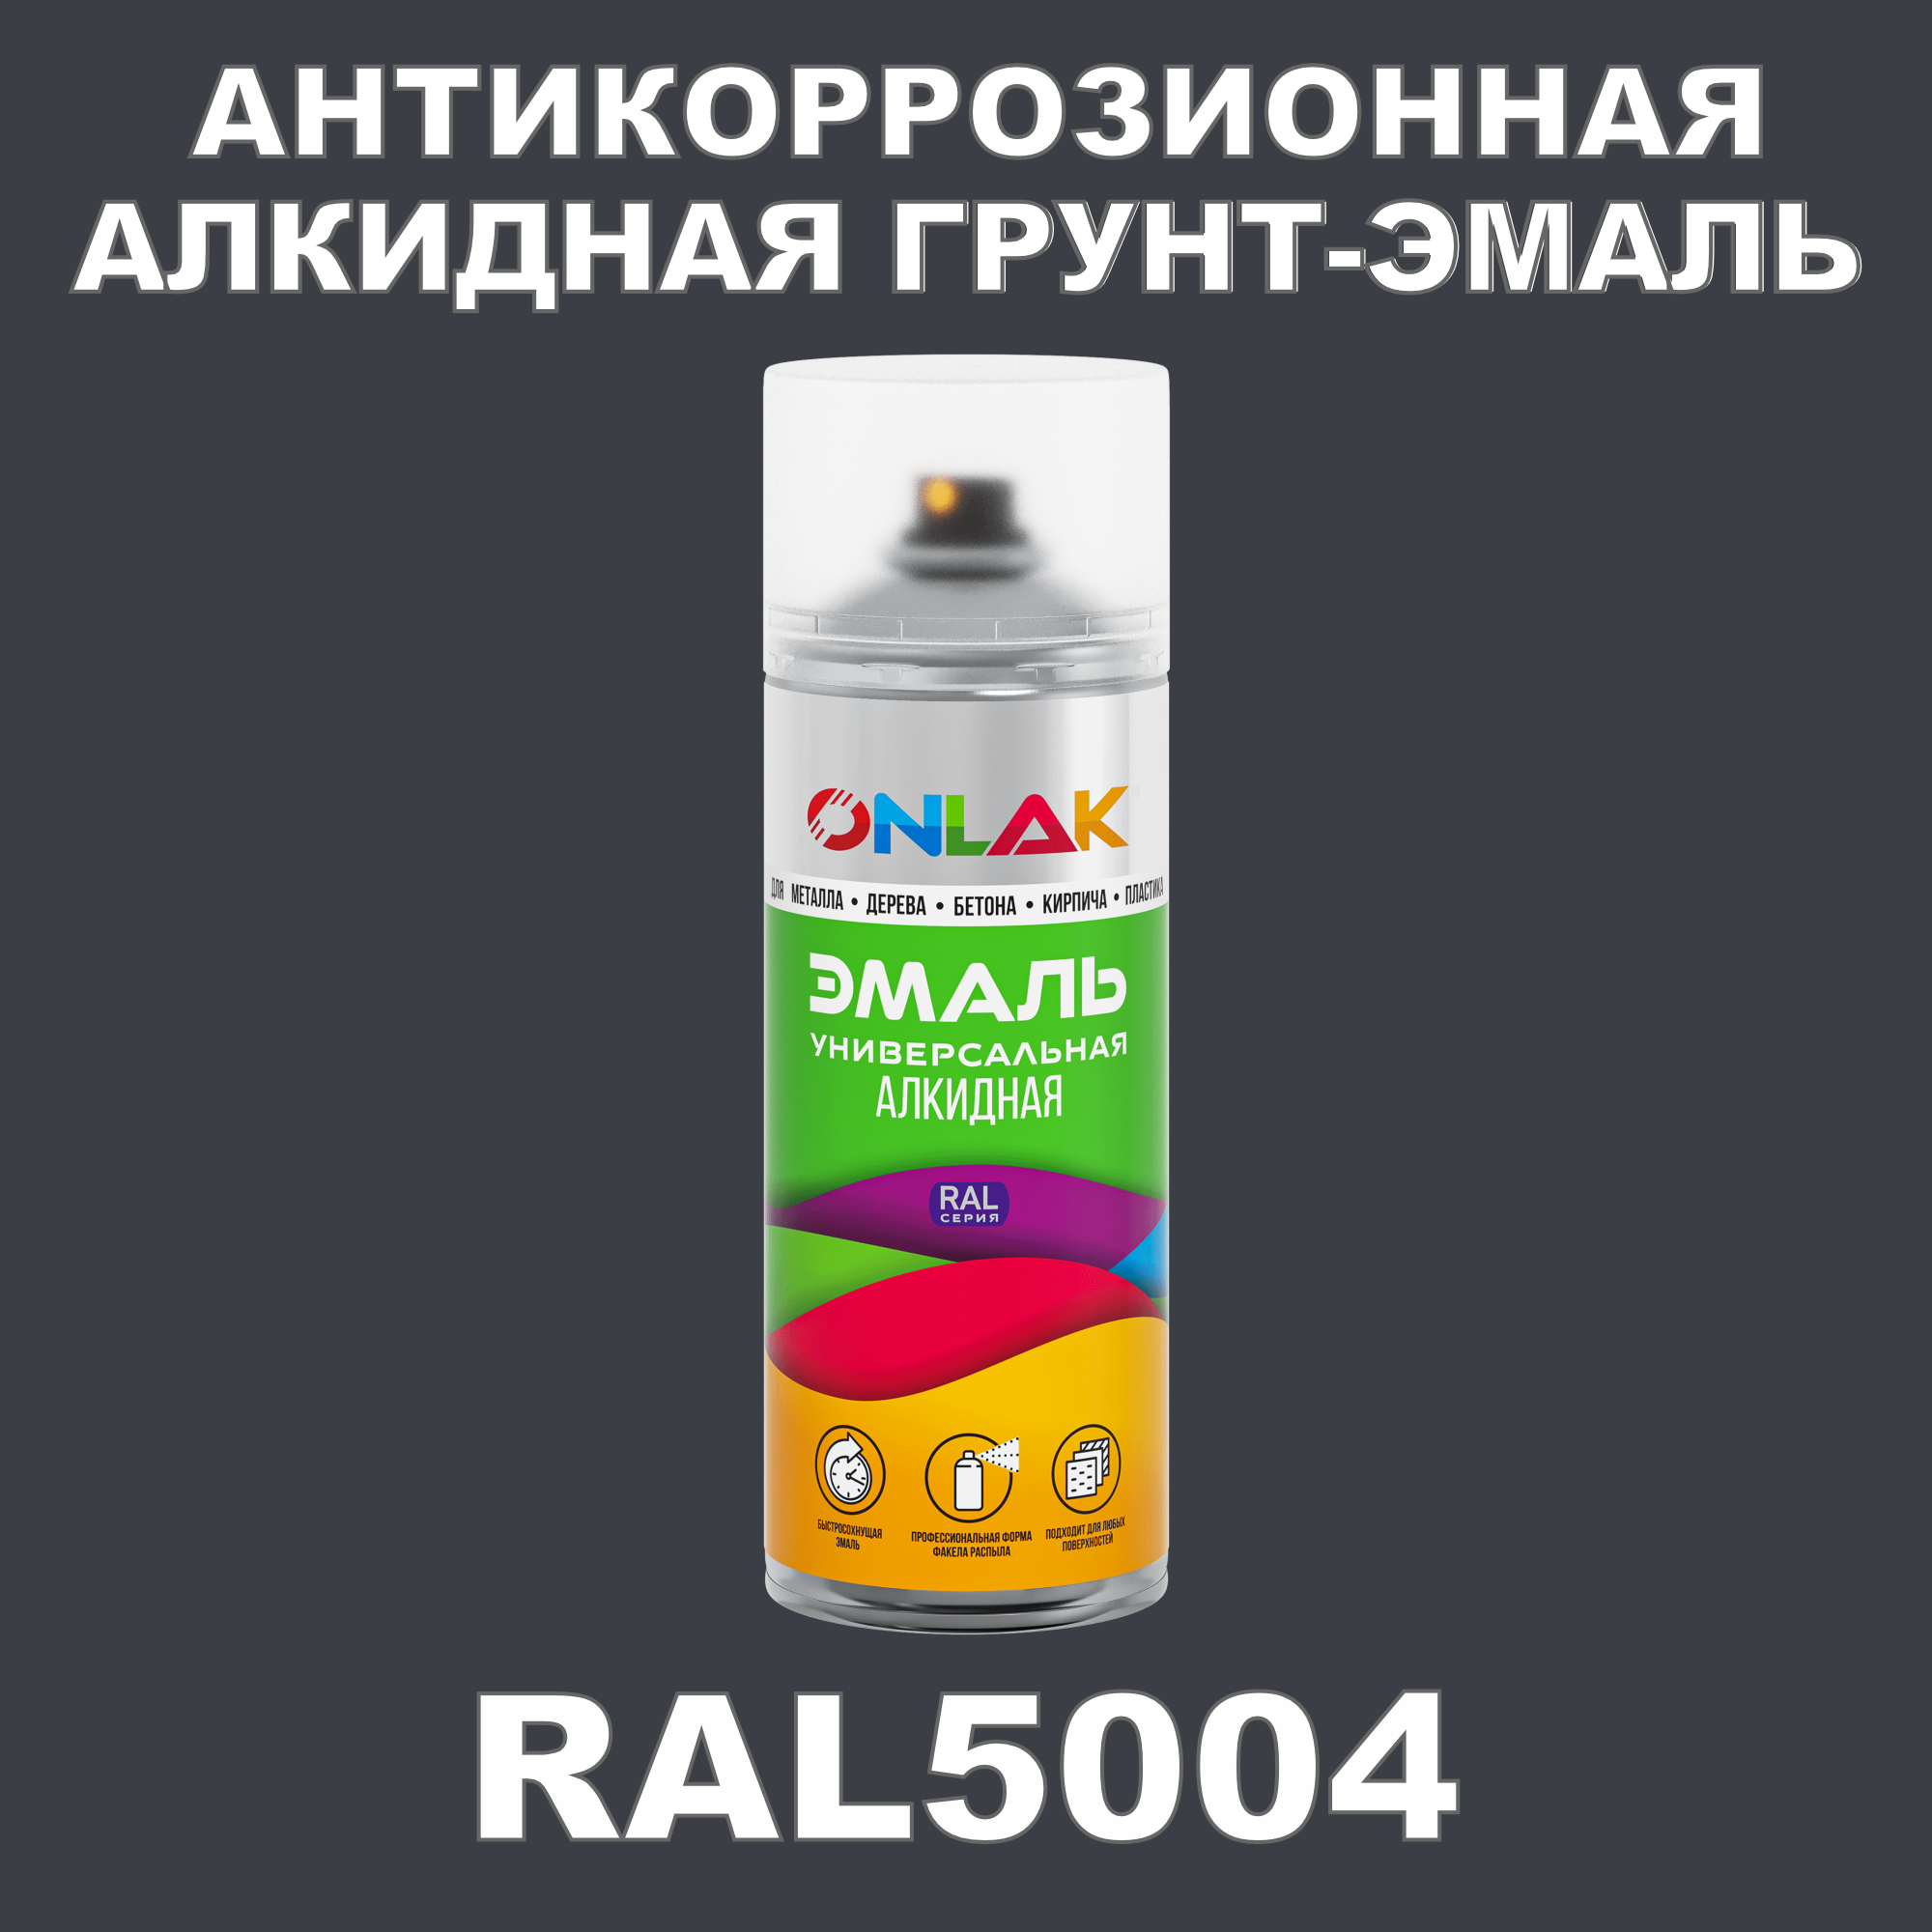 Антикоррозионная грунт-эмаль ONLAK RAL5004 полуматовая для металла и защиты от ржавчины